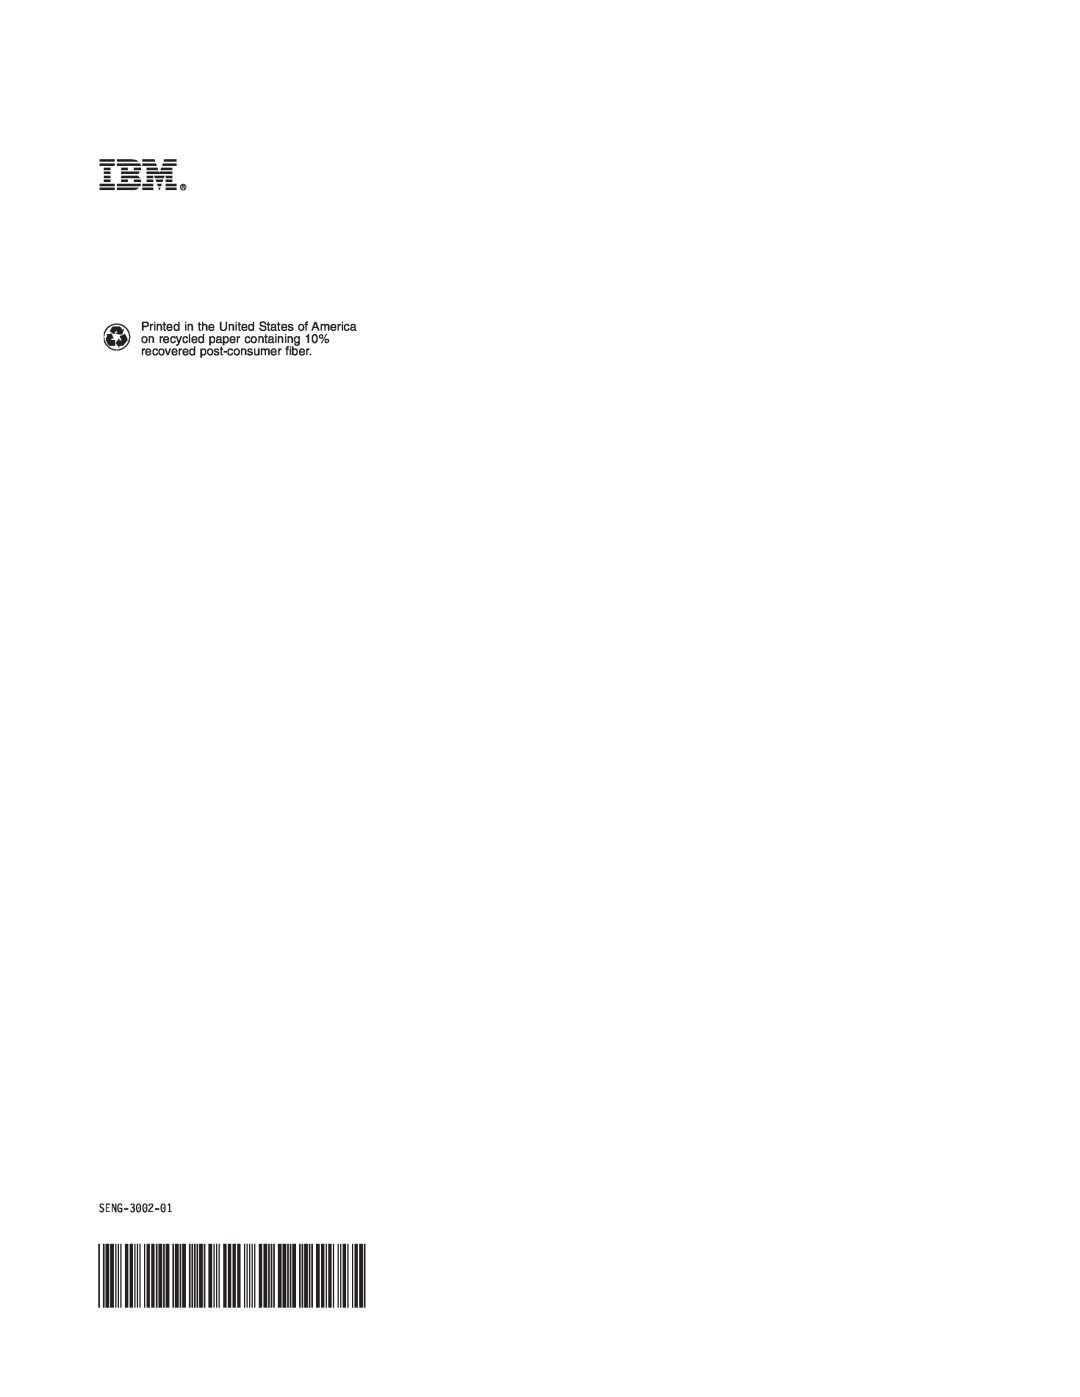 IBM SENG-3002-01 manual 